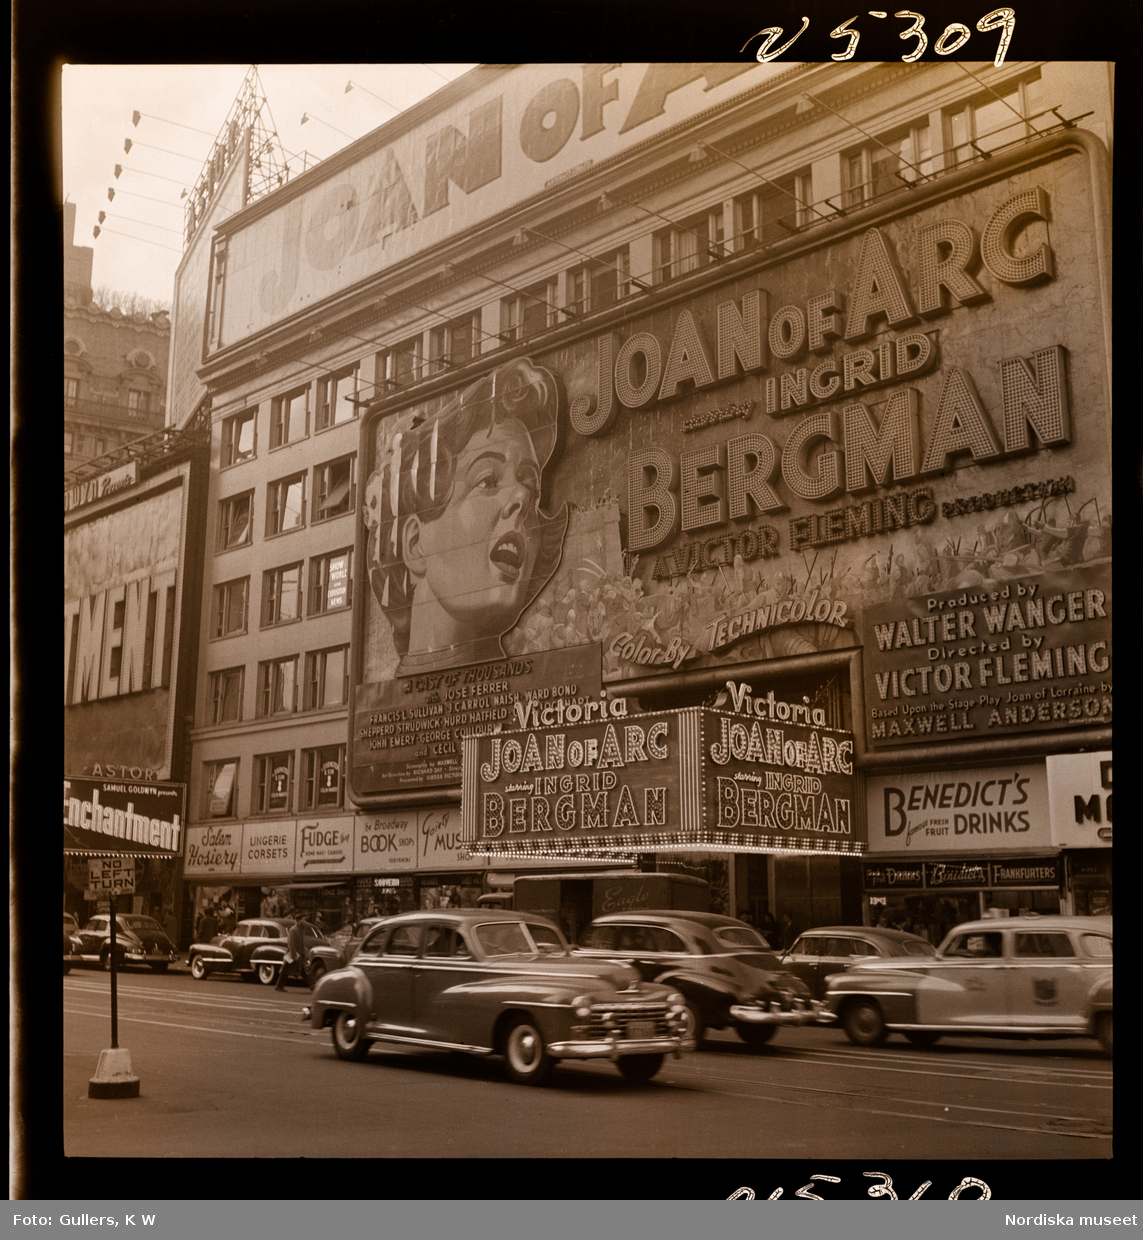 1690 New York allmänt (N.Y. Herald Tribune). Reklam/ annonsering på biograf Victoria för filmen "Joan of Arc" med Ingrid Bergman i huvudrollen.